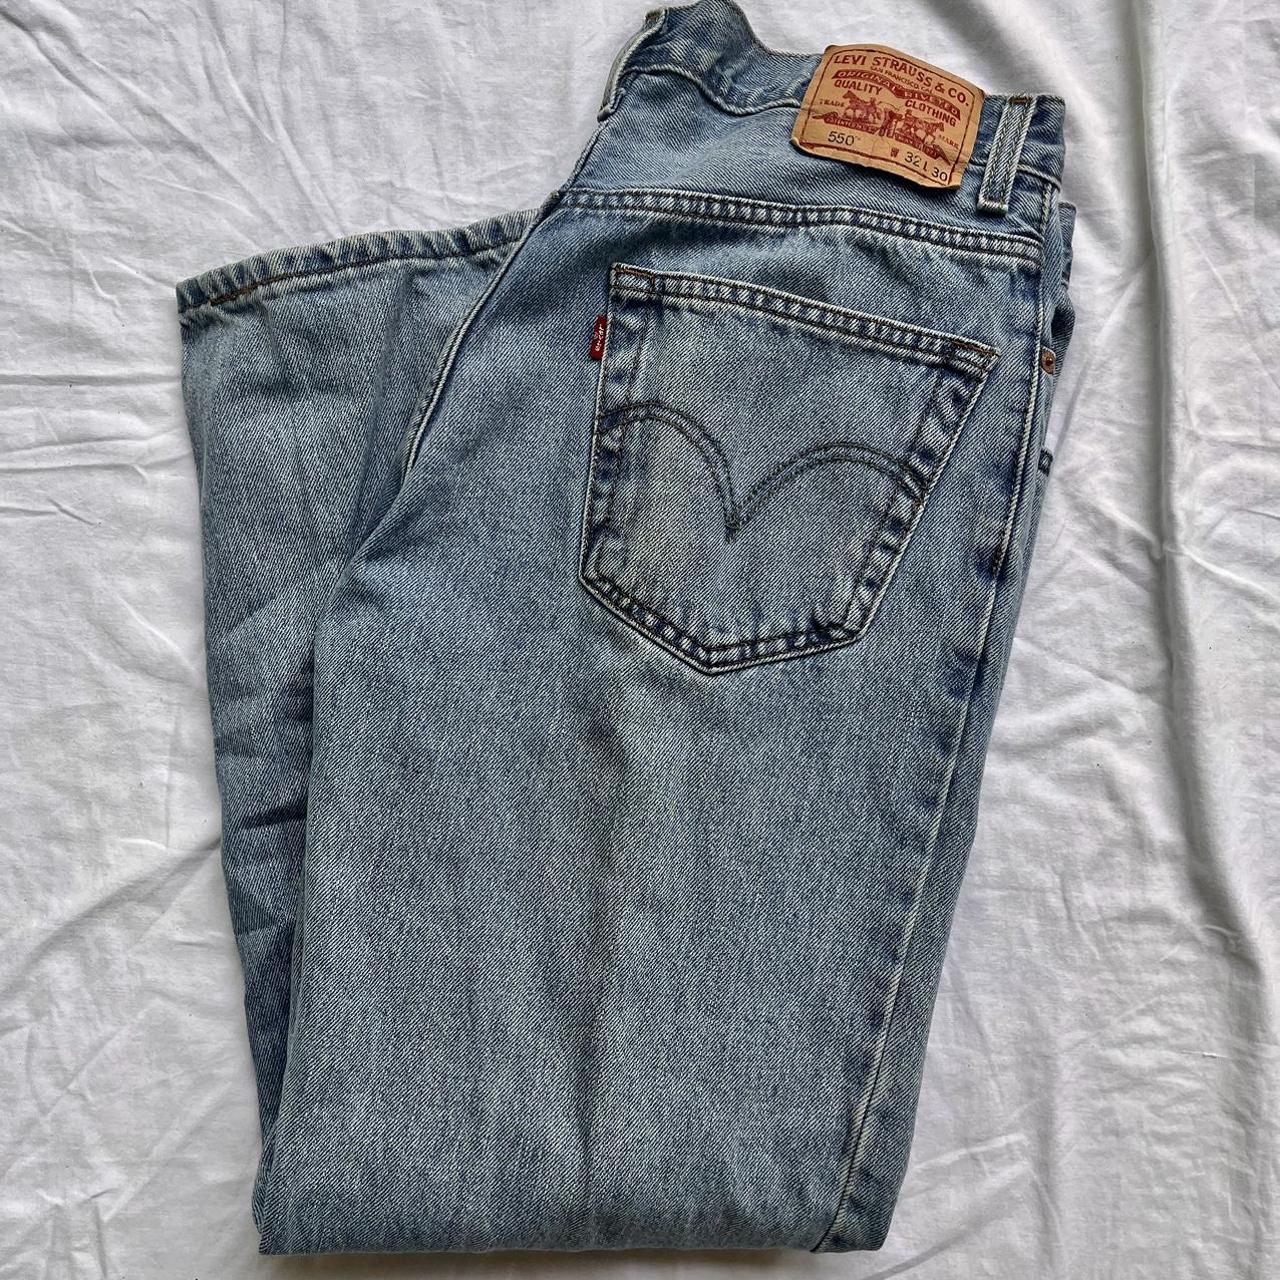 levi’s 550 relaxed fit jeans 32x30 women’s #levis... - Depop